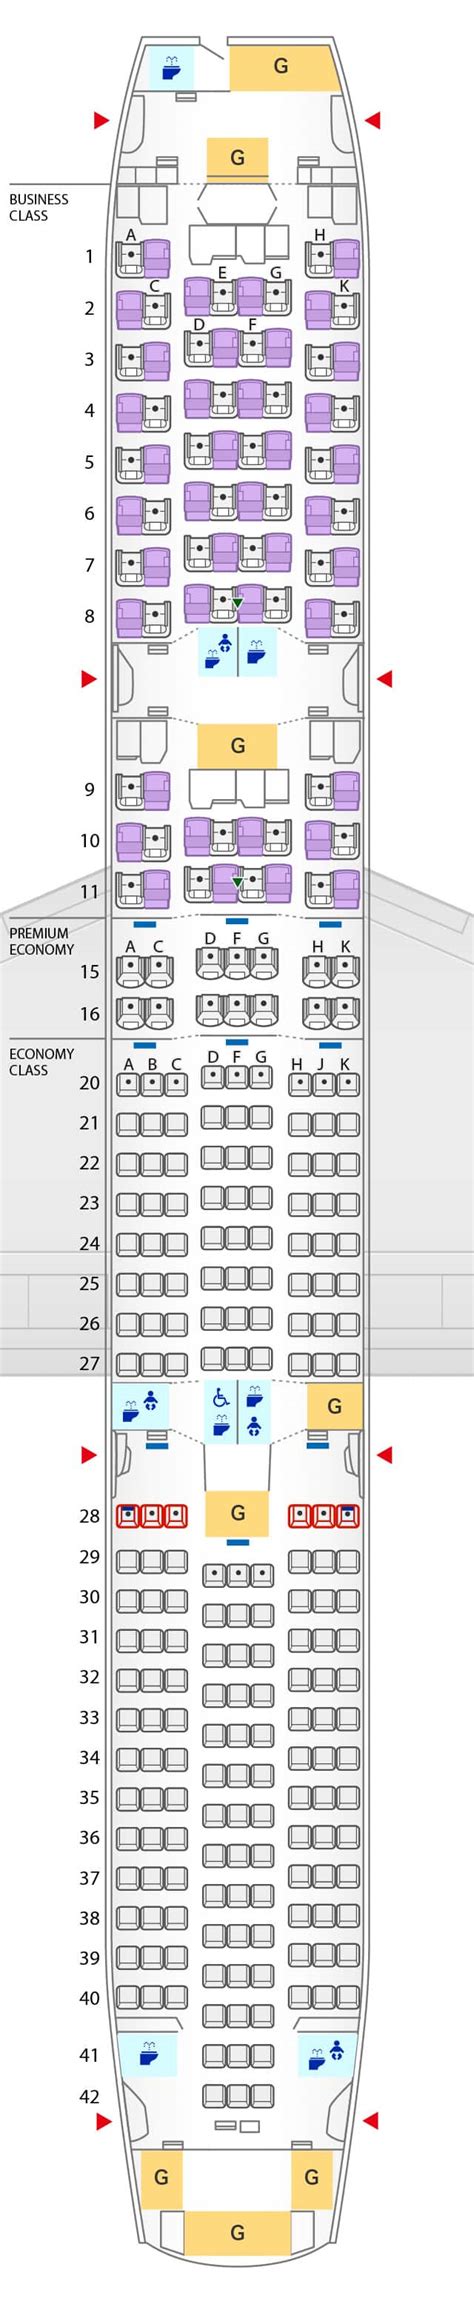 lufthansa boeing 787-9 dreamliner seat map